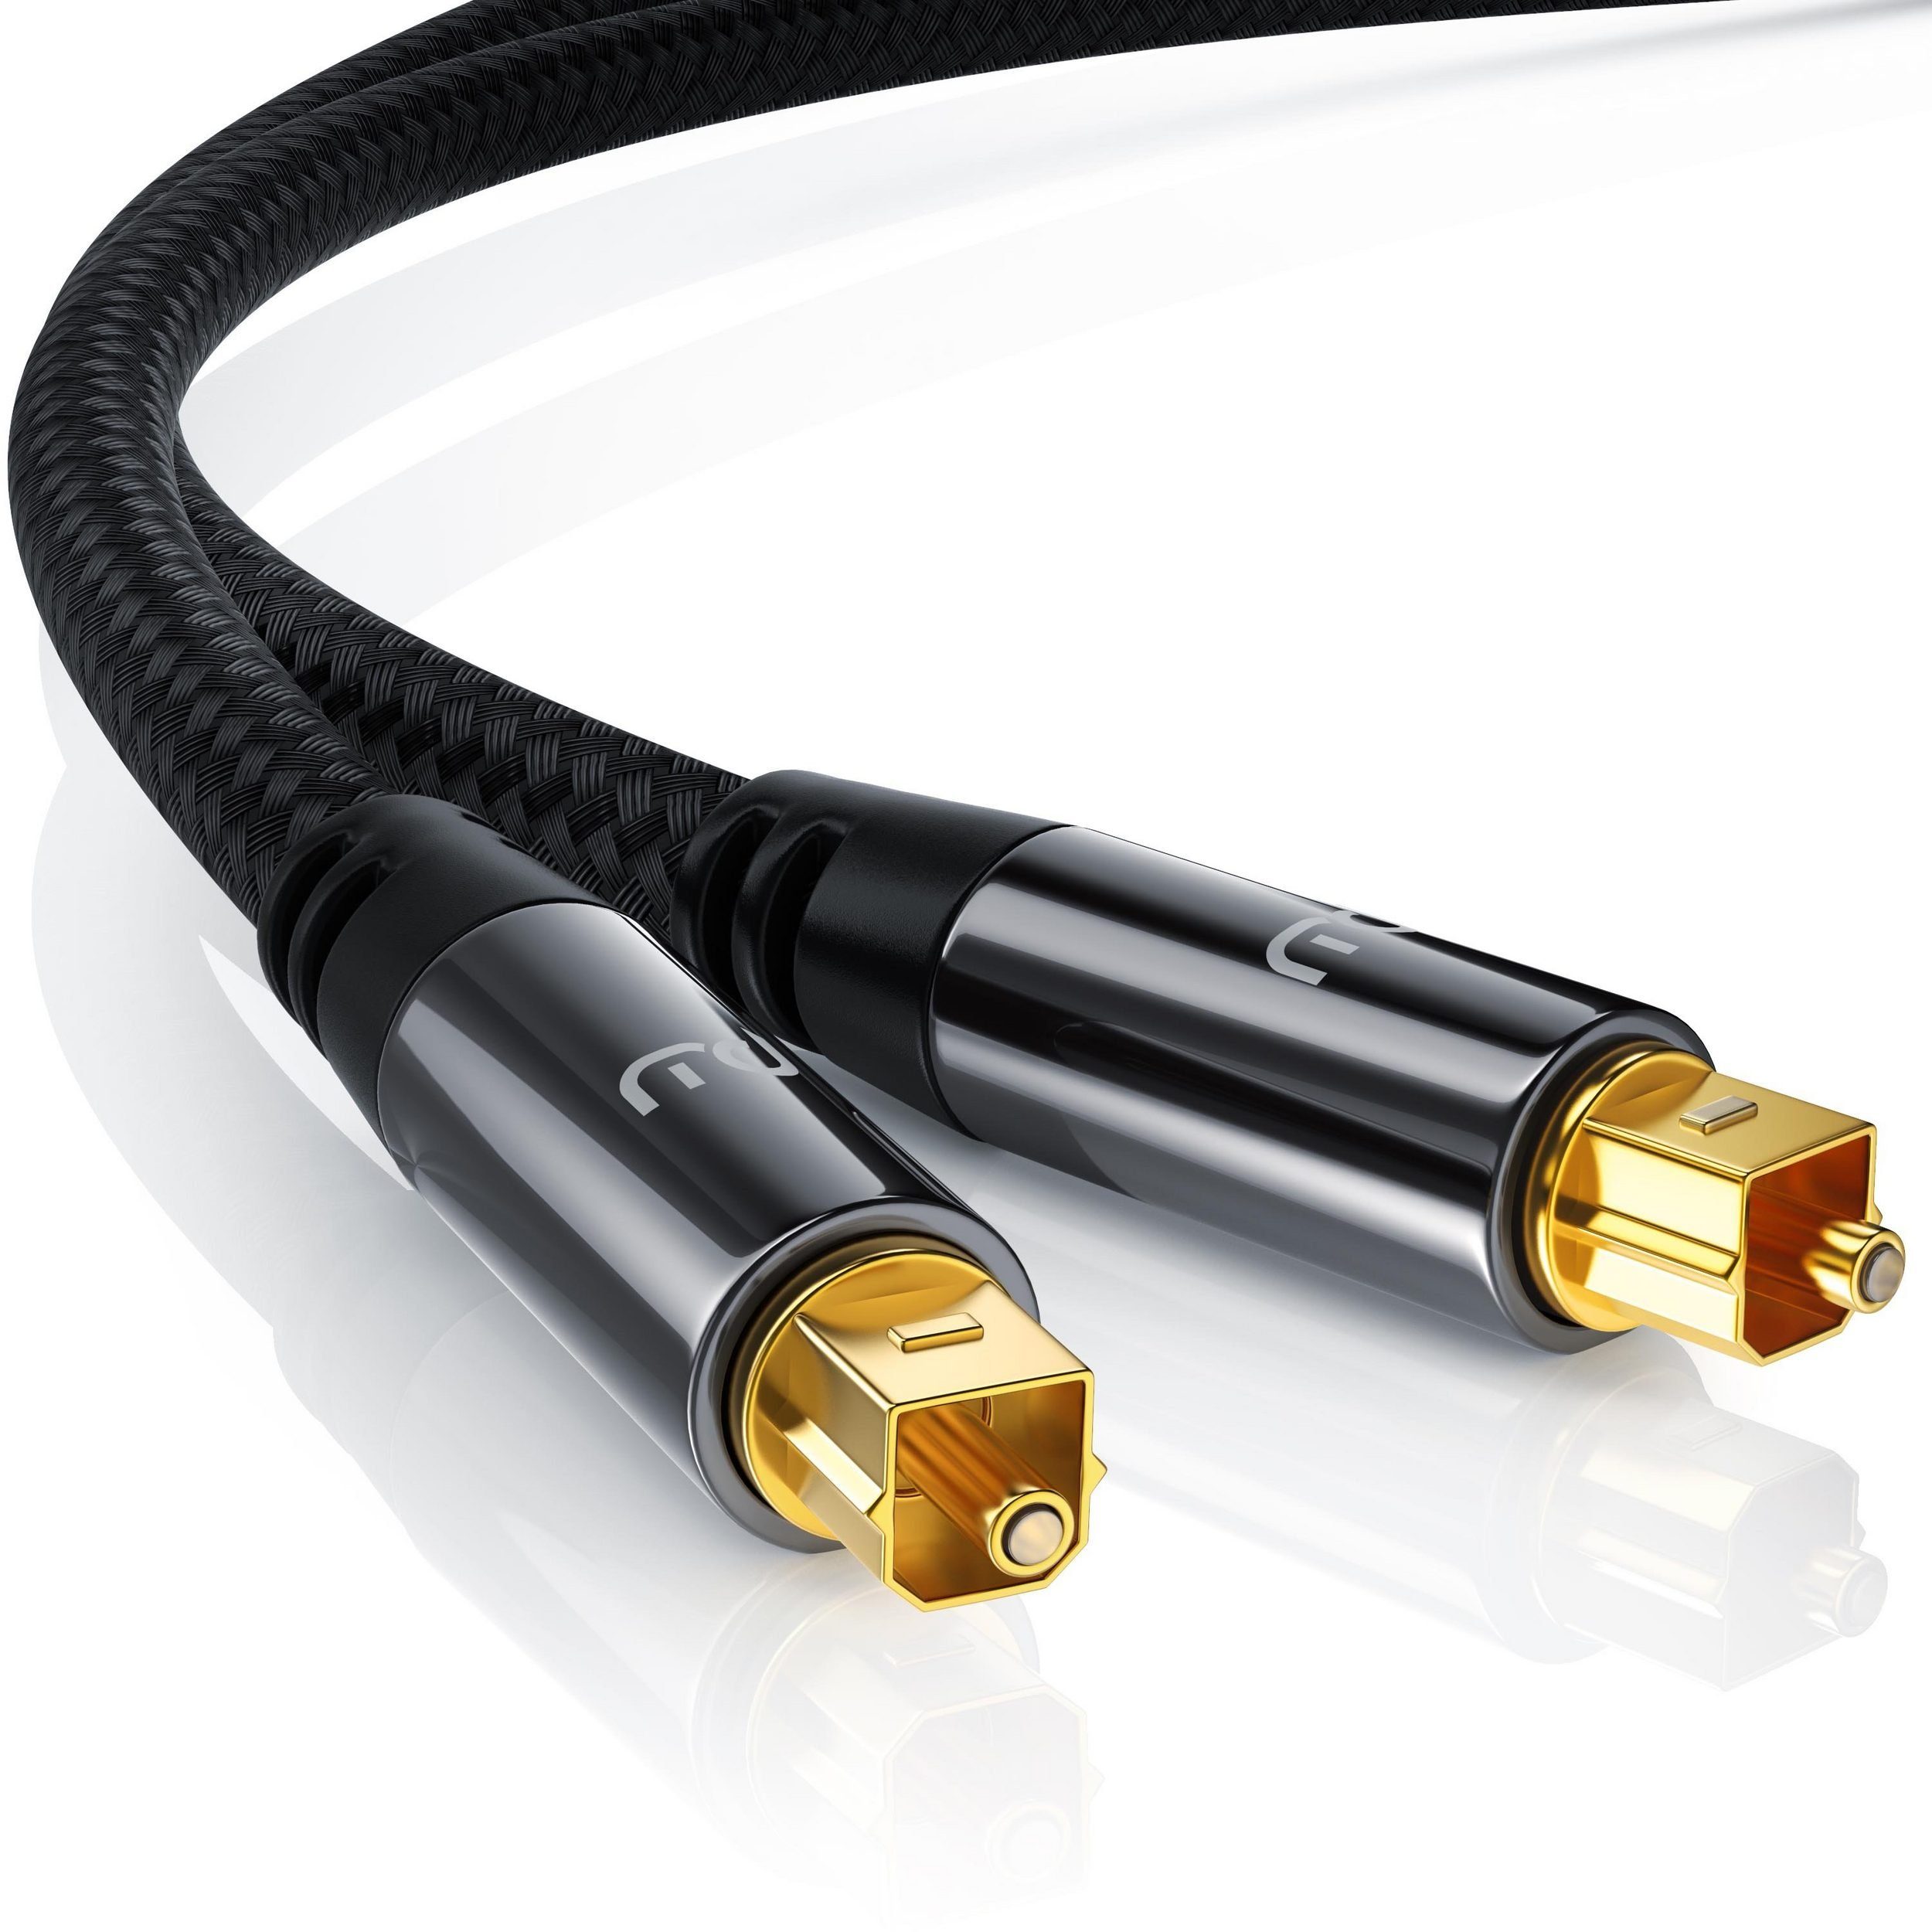 Primewire Audio-Kabel, Toslink Stecker, Toslink Stecker (50 cm), Toslink  Kabel optisch / digital mit Metallstecker & Nylonmantel S/PDIF Audio-Kabel  online kaufen | OTTO